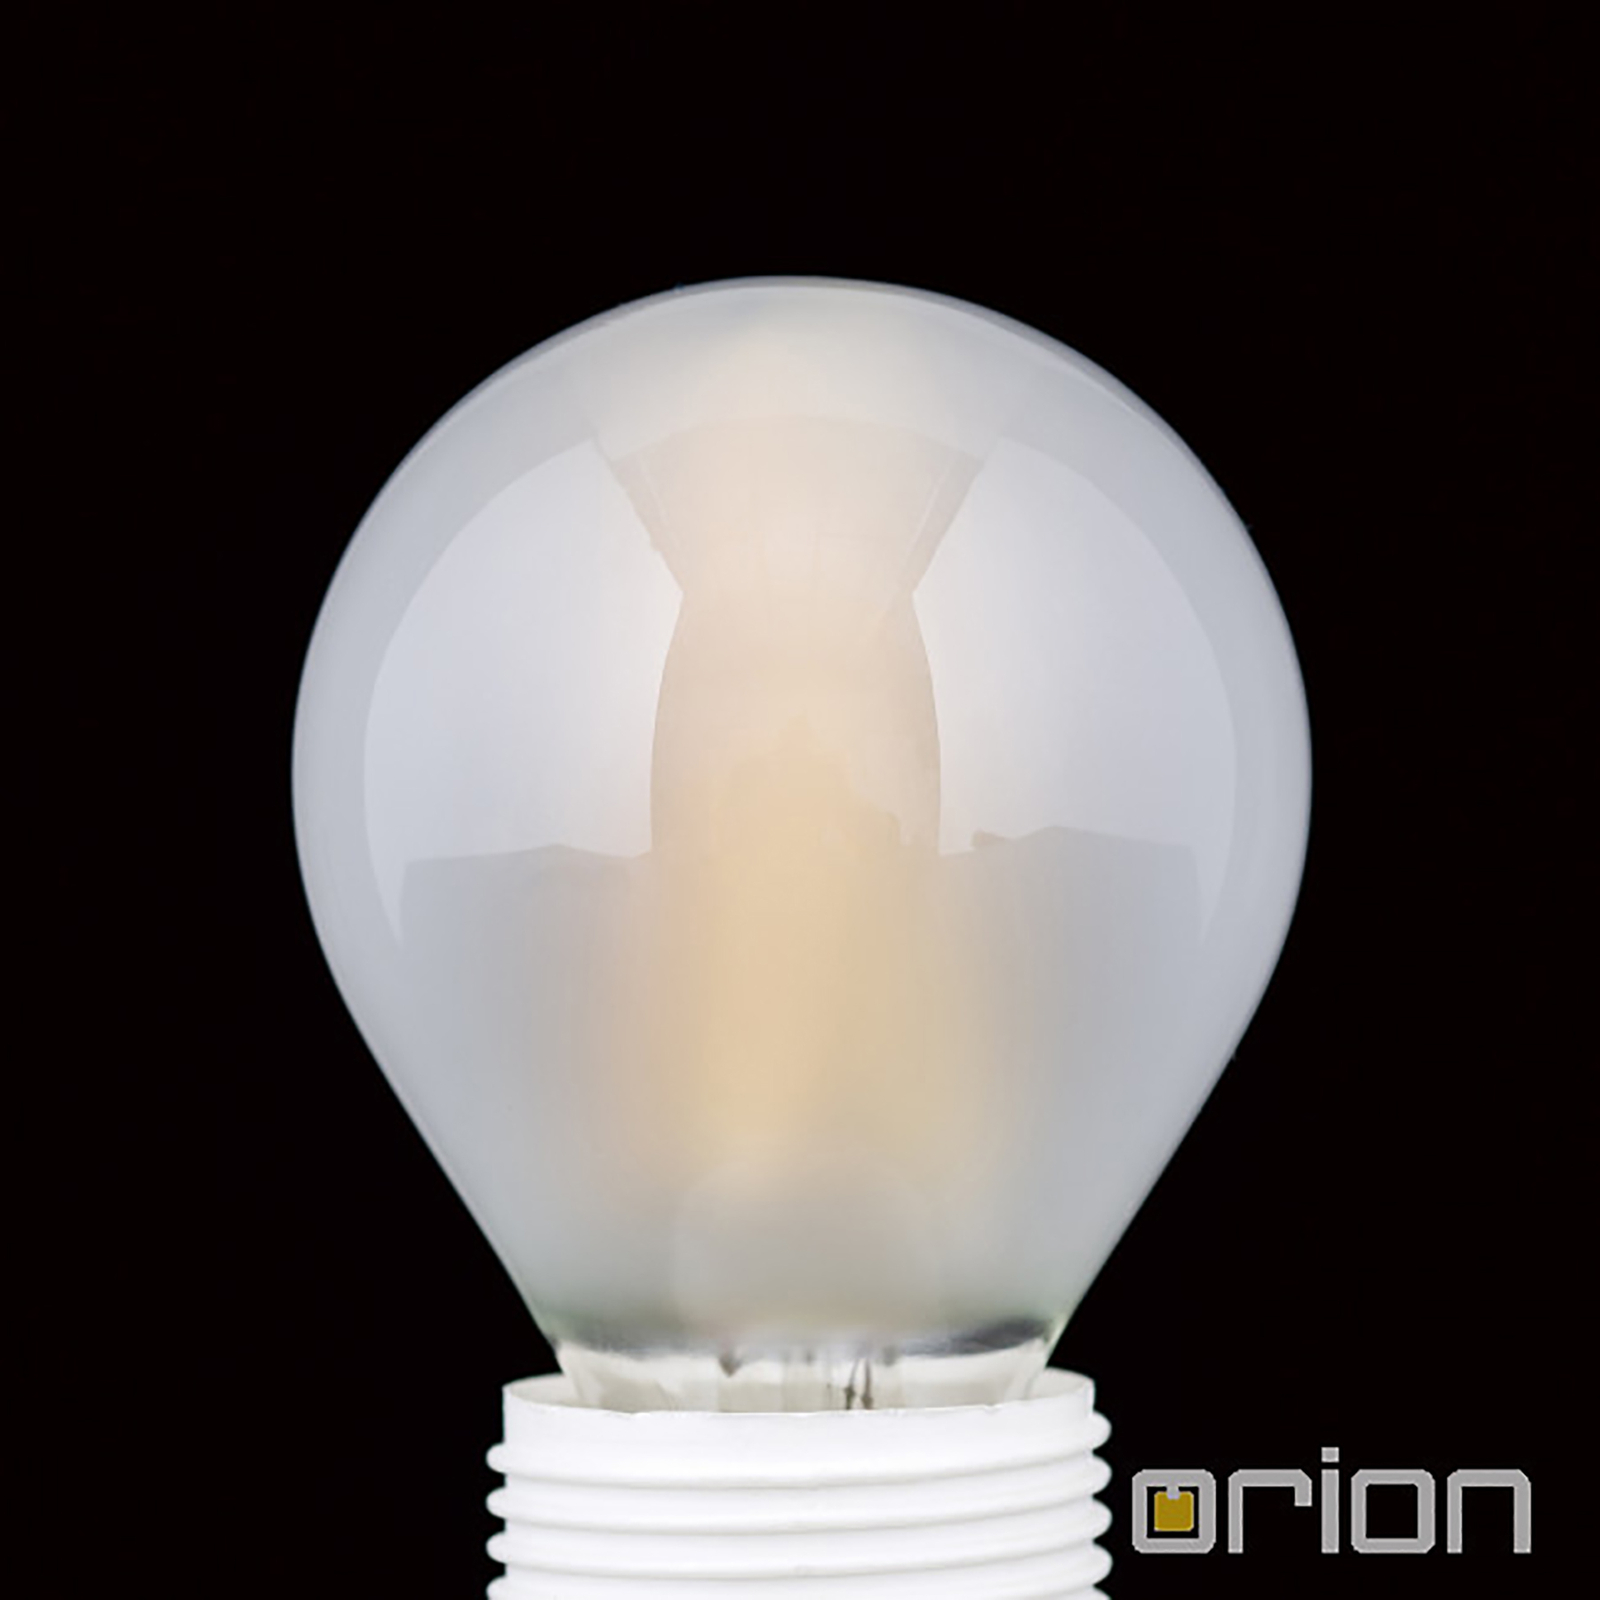 Golf ball LED bulb E14 4.5 W matt 2,700 K dimmable